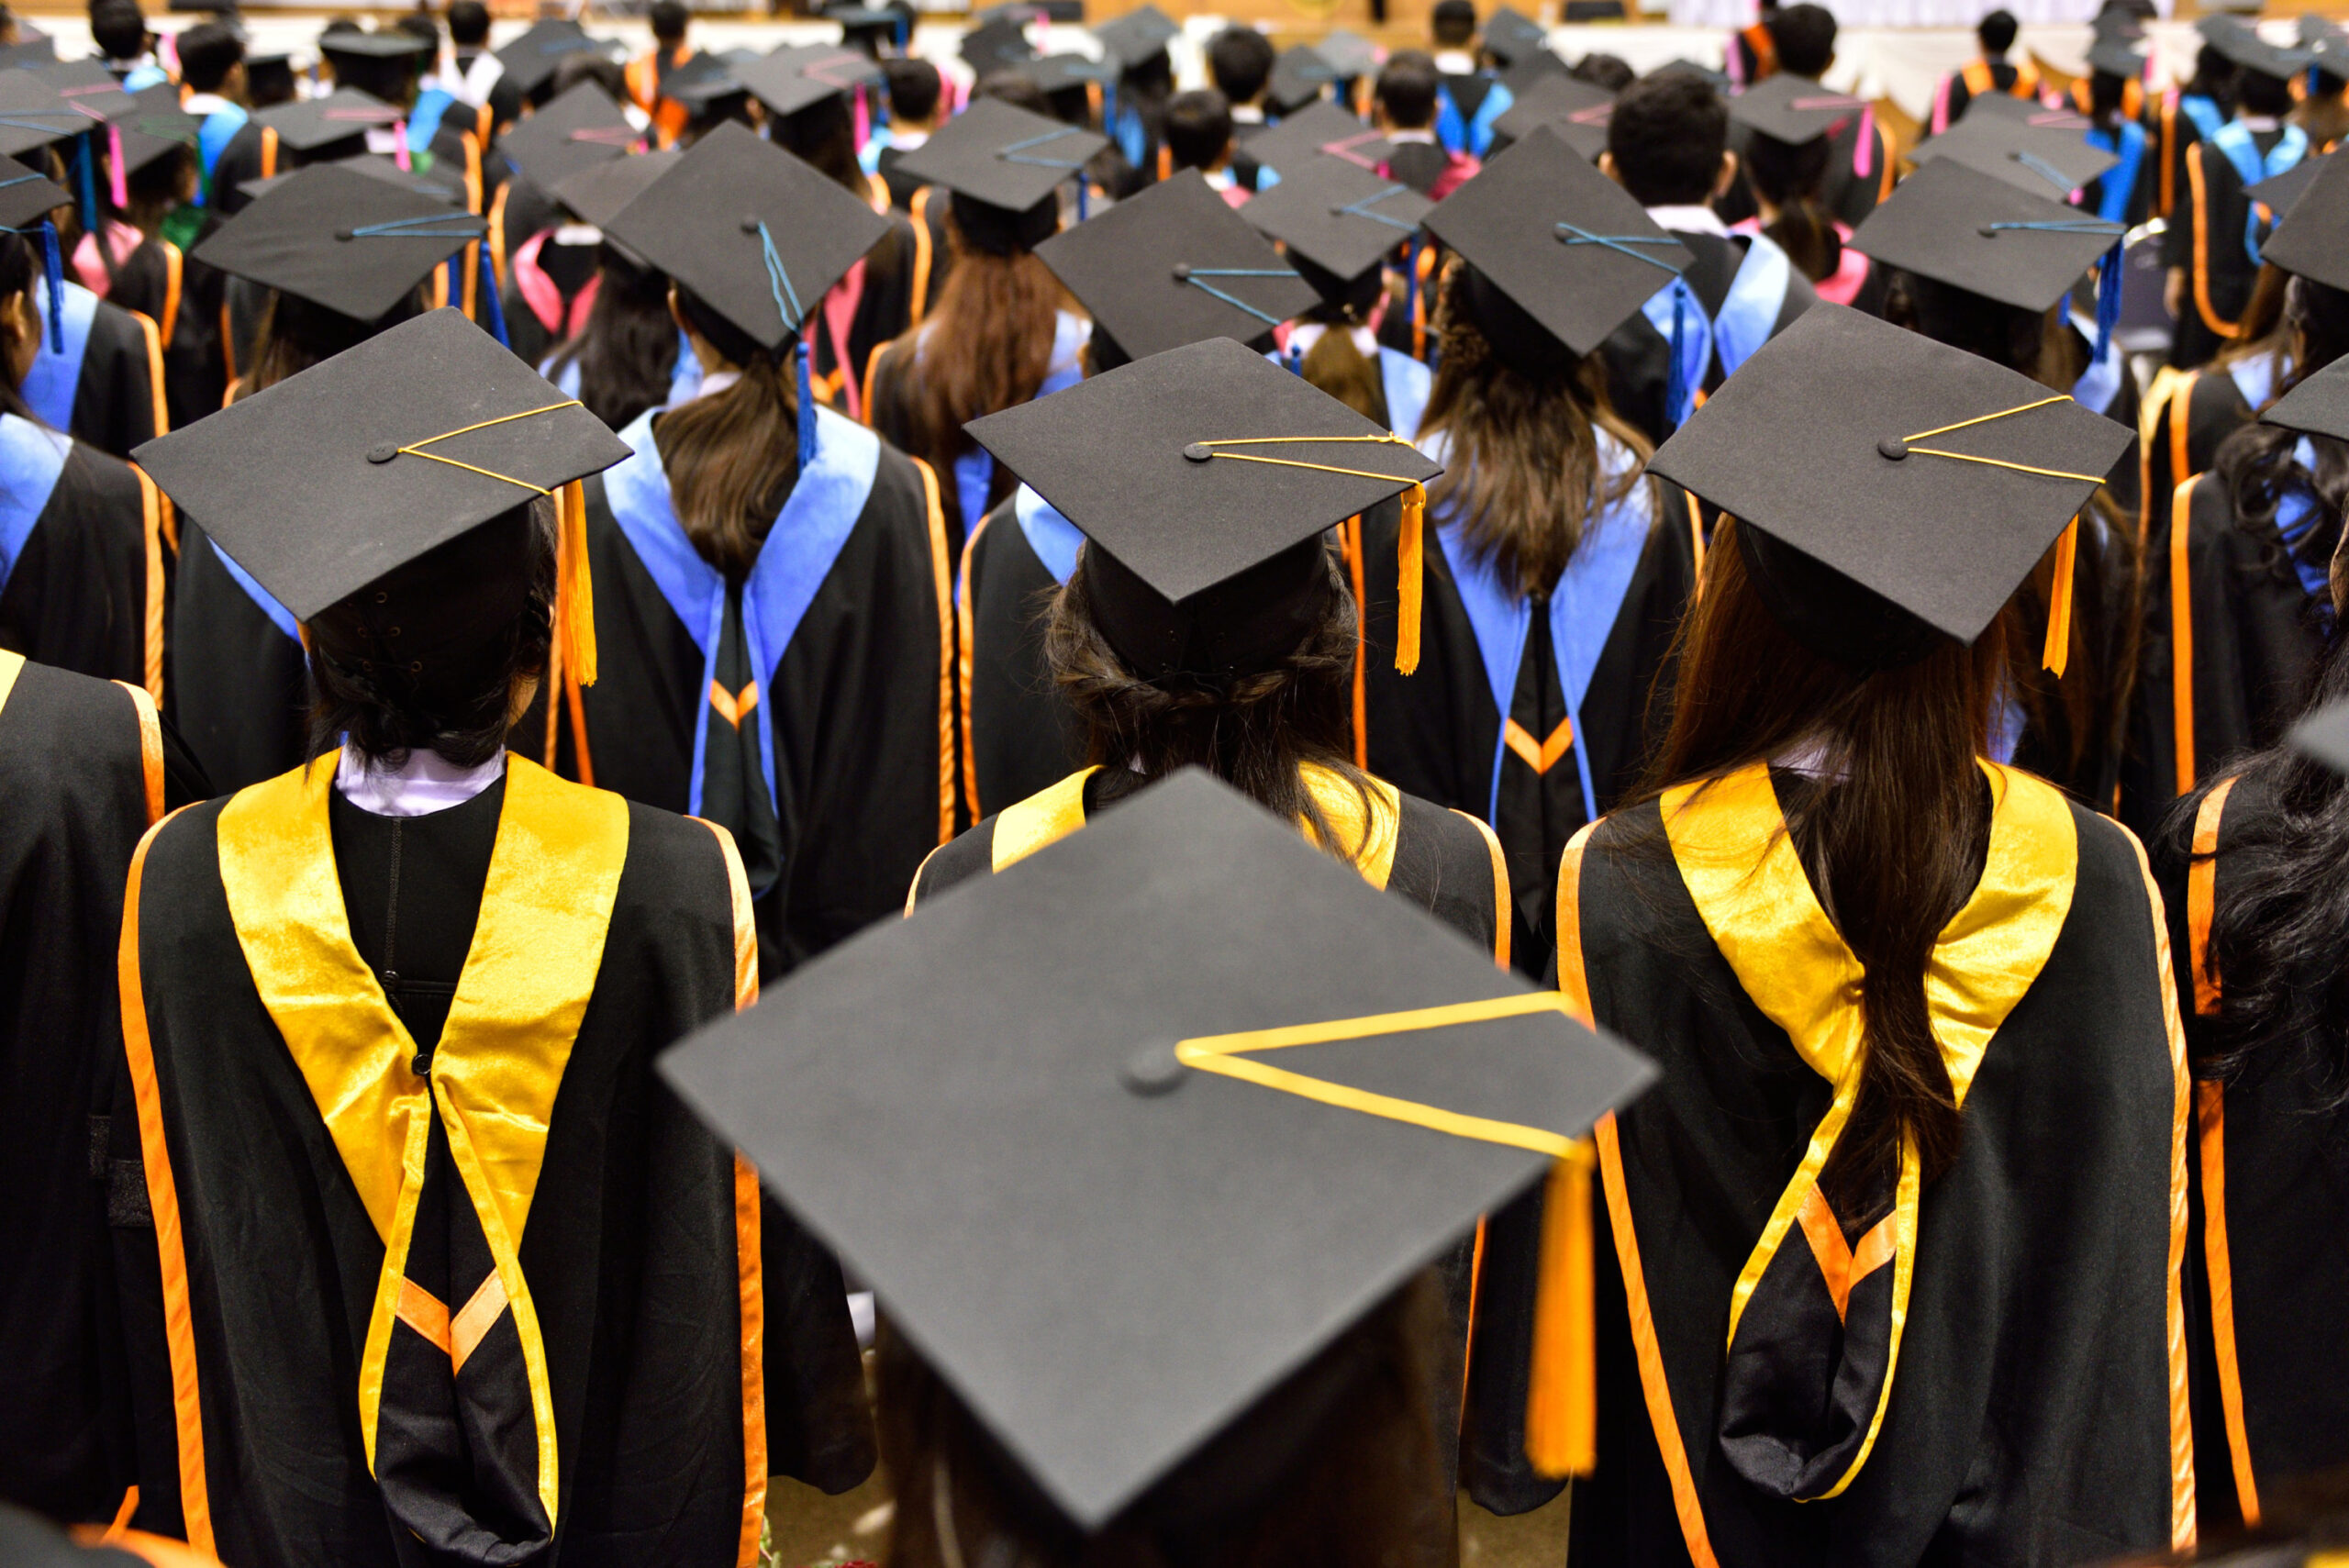 Postgraduate education: Is it worth it?